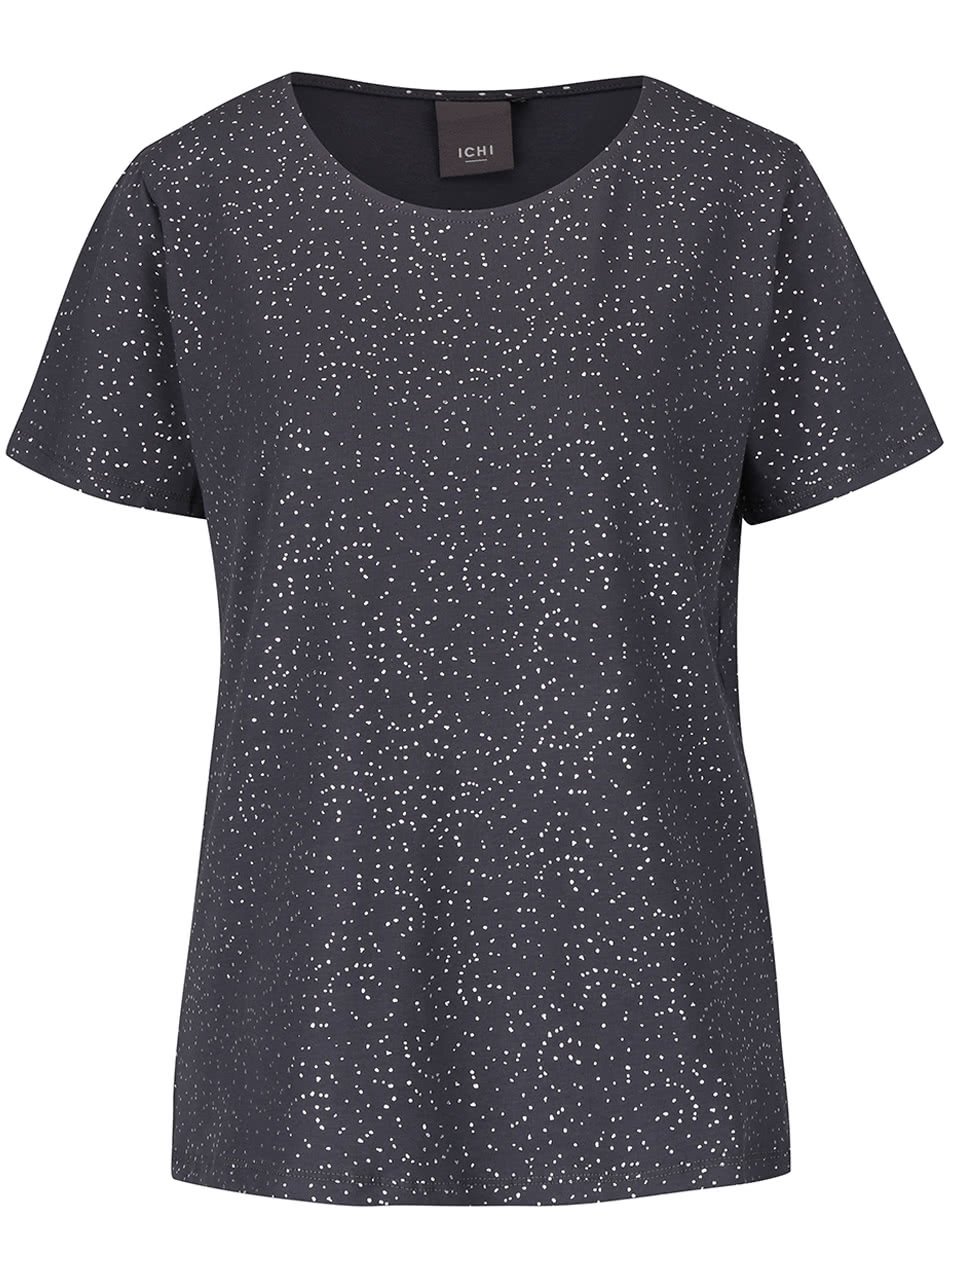 Šedé dámské tričko s potiskem ve stříbrné barvě ICHI Kezza